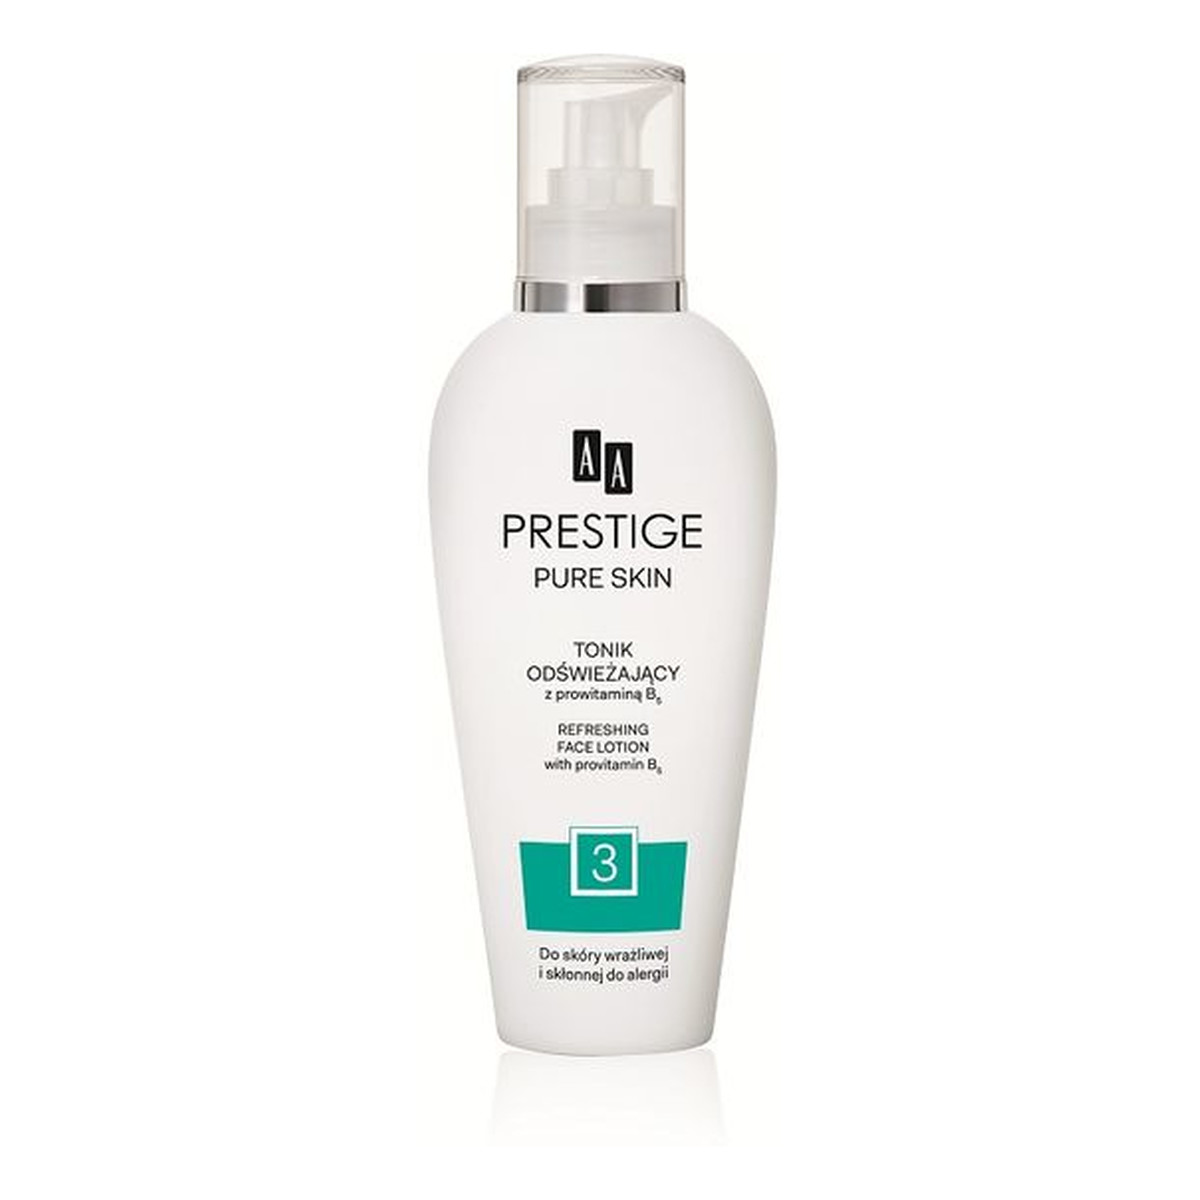 AA Prestige Pure Skin Tonik Odświeżający 200ml